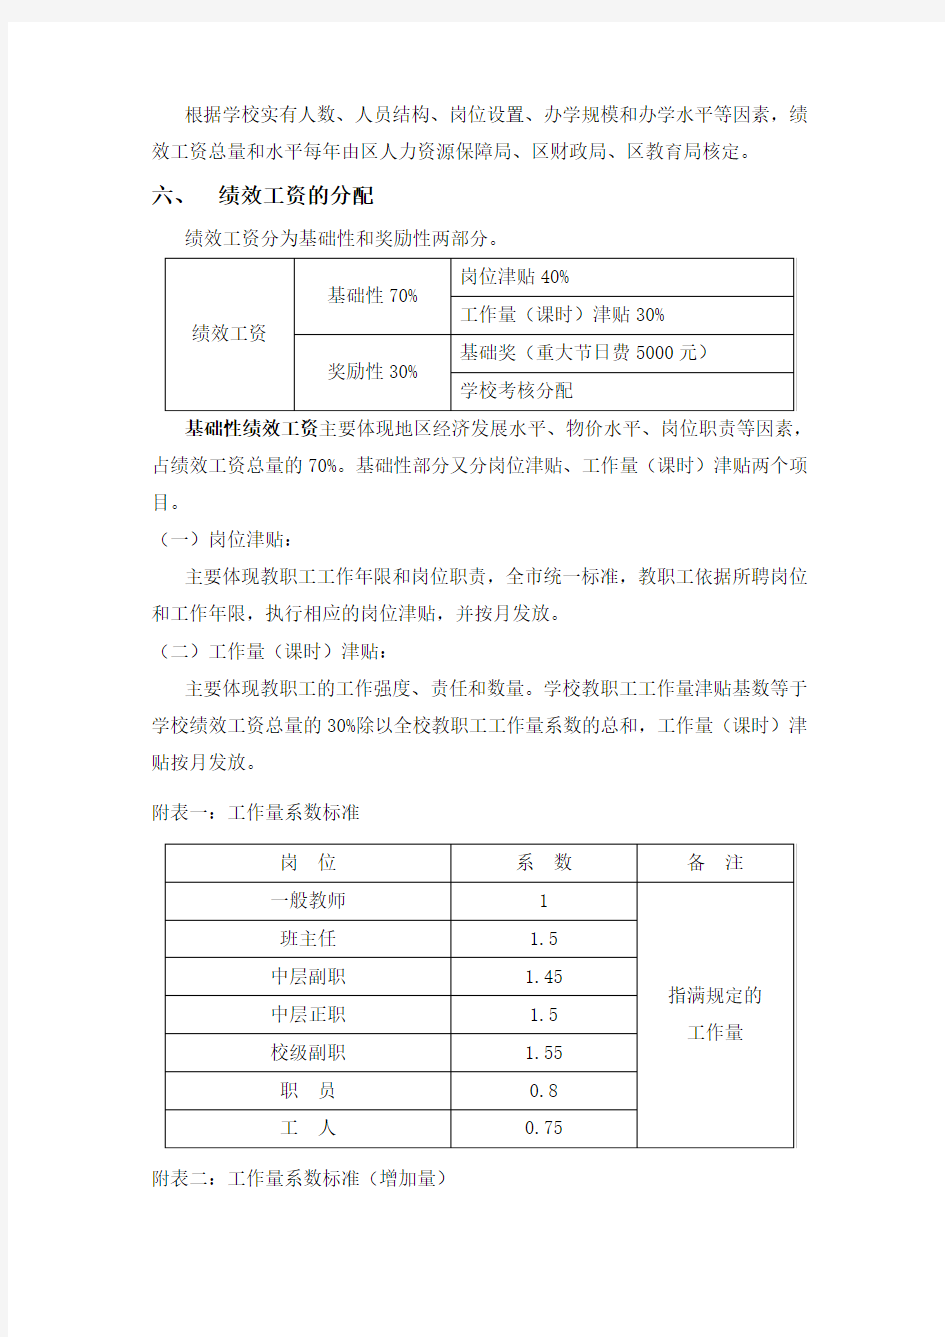 上海教师绩效工资实施方案(试行稿)